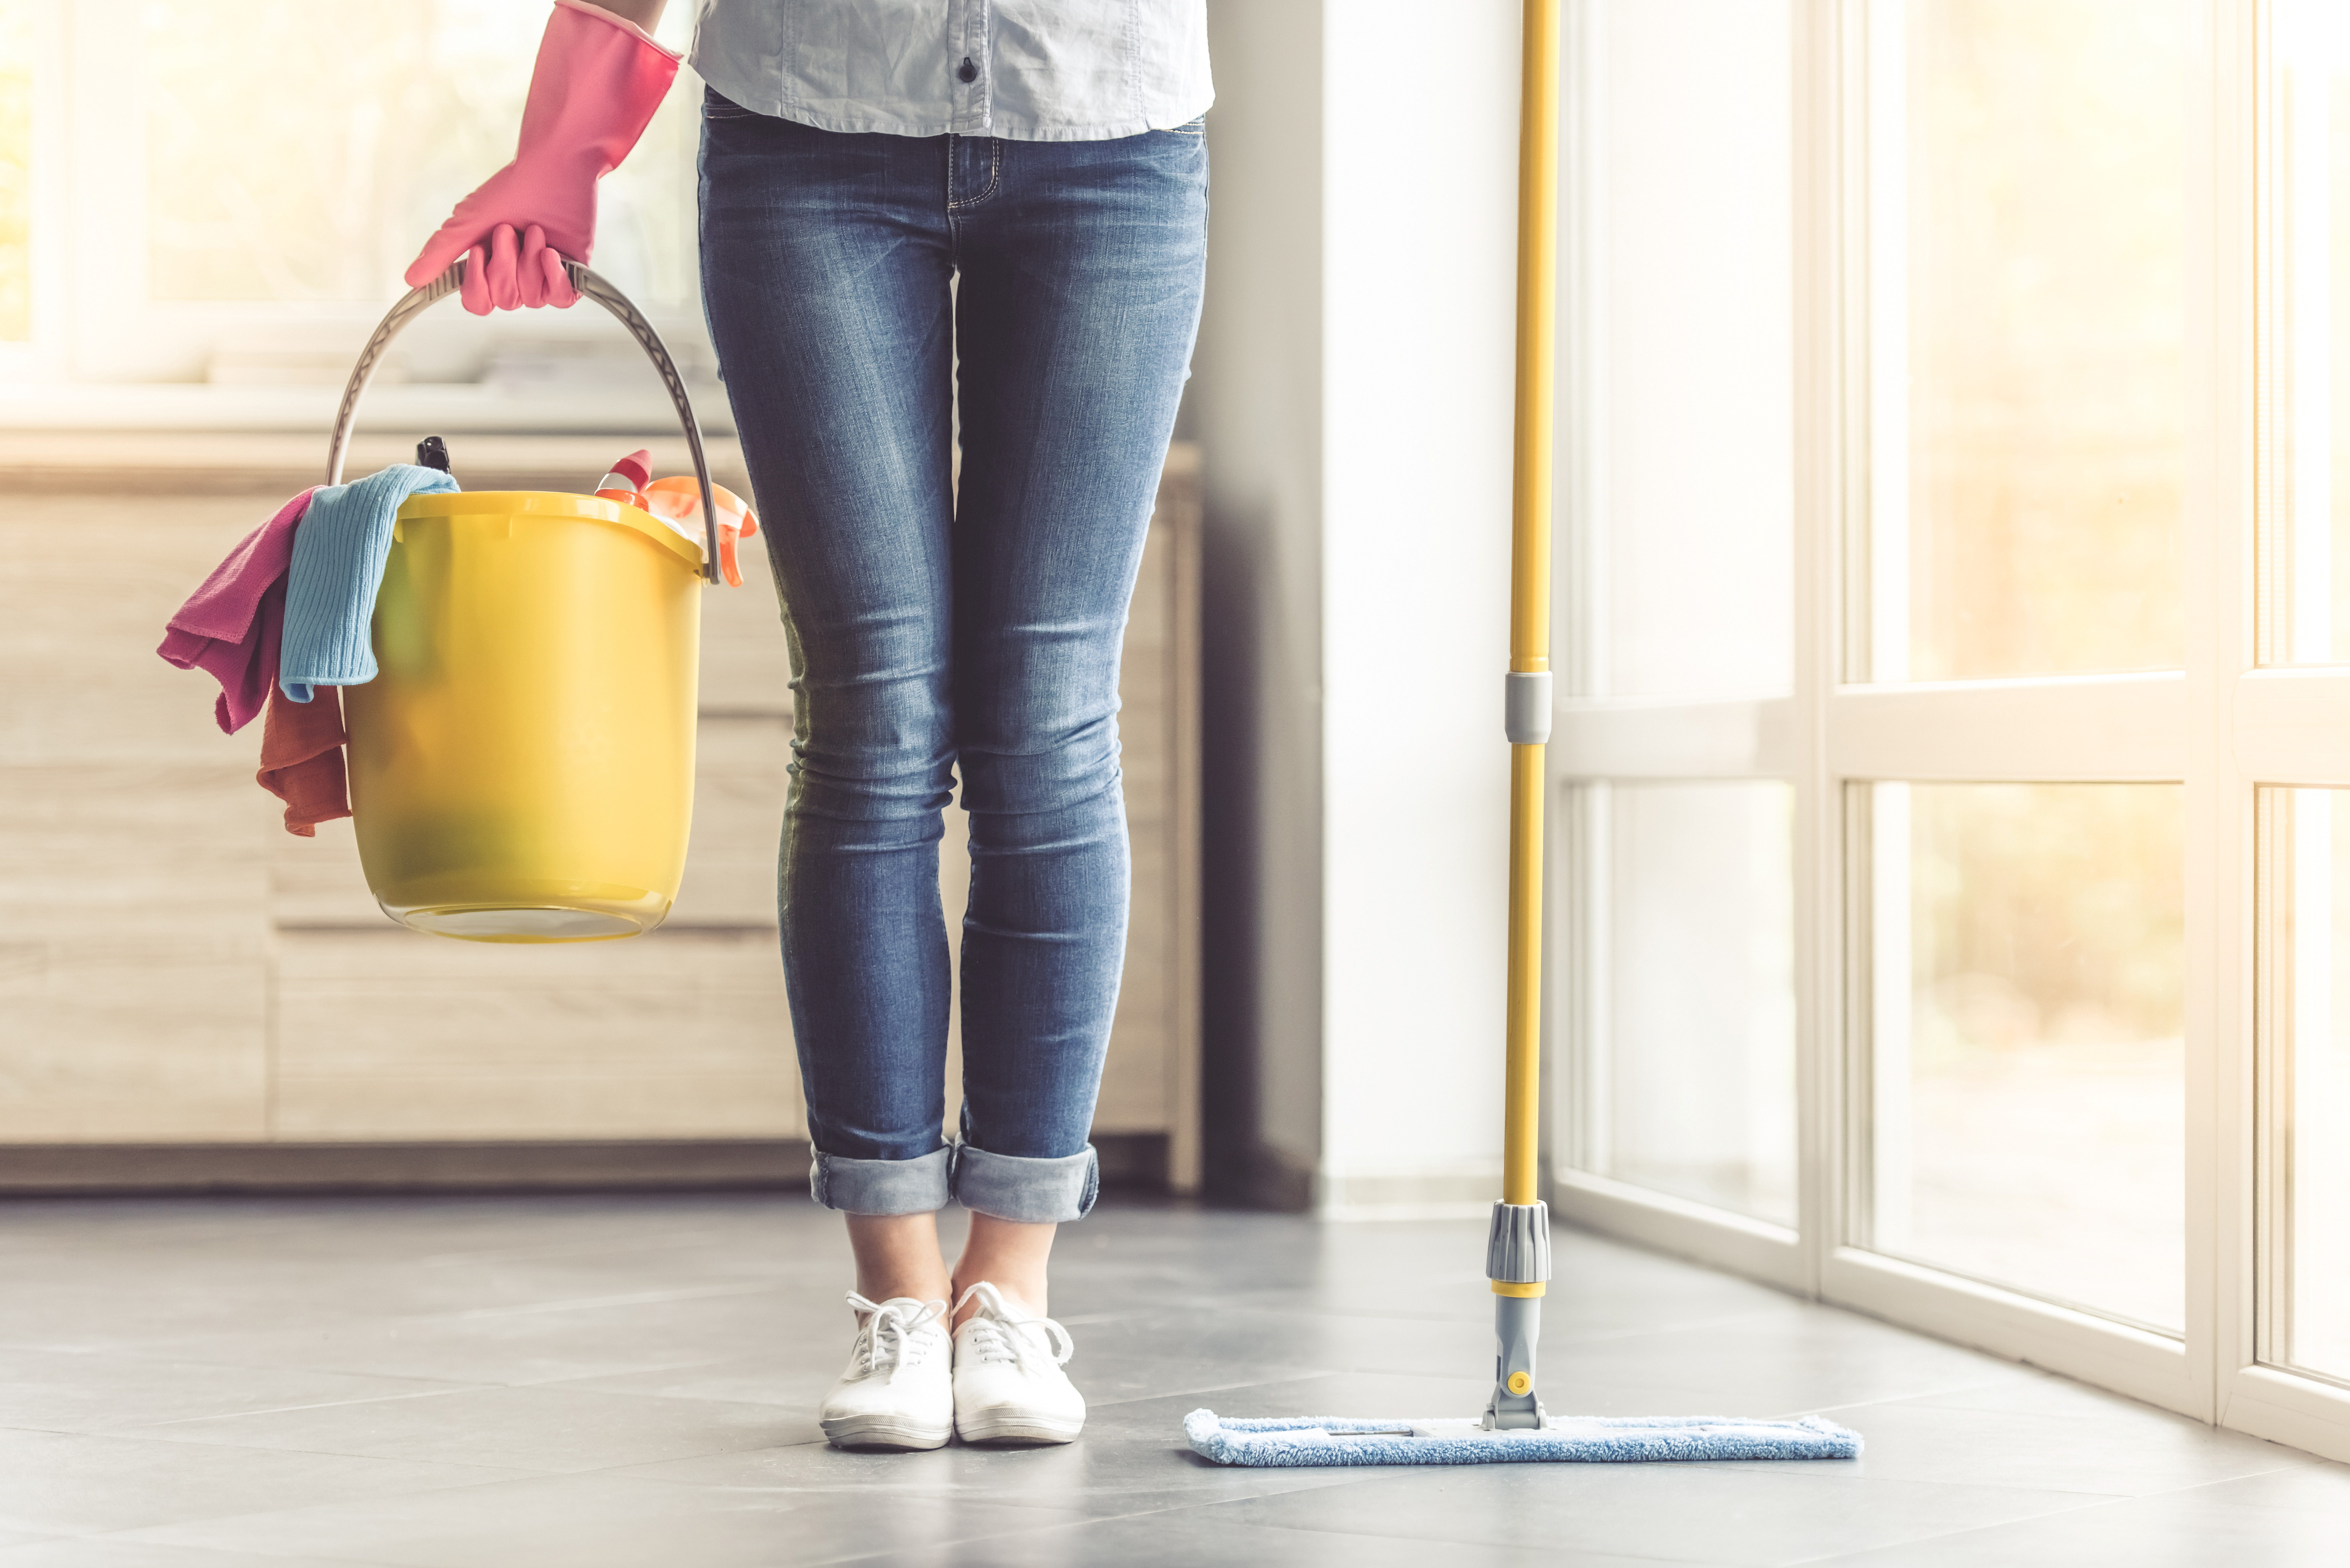 Ukážeme vám, jak správně čistit vaši podlahu.